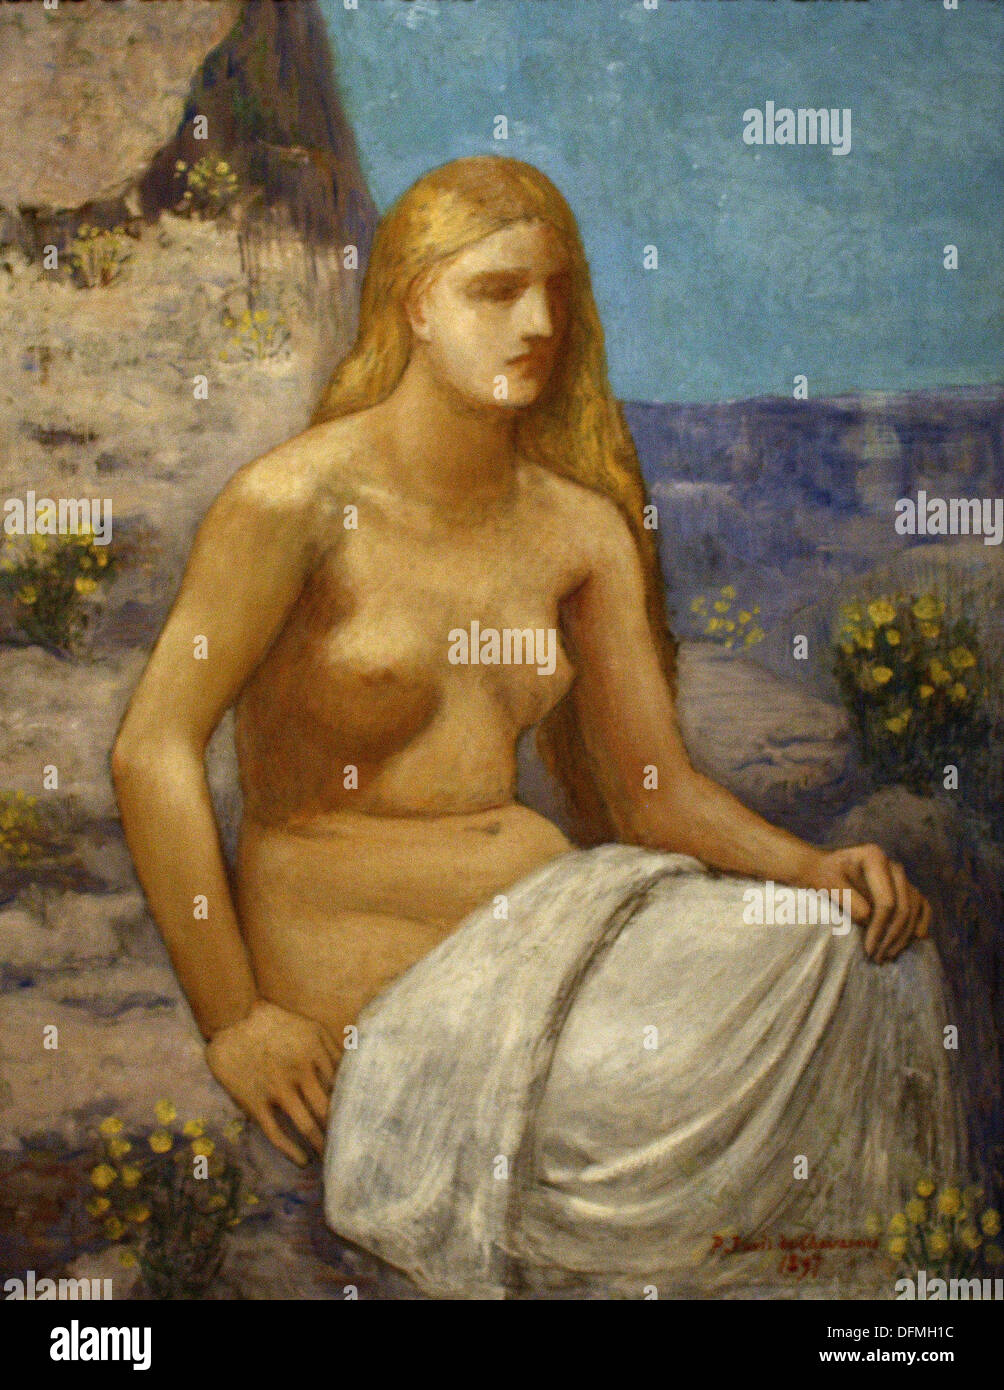 Pierre Puvis de Chavannes - María Magdalena - 1897 - Museo de Bellas Artes - Budapest, Hungría. Foto de stock